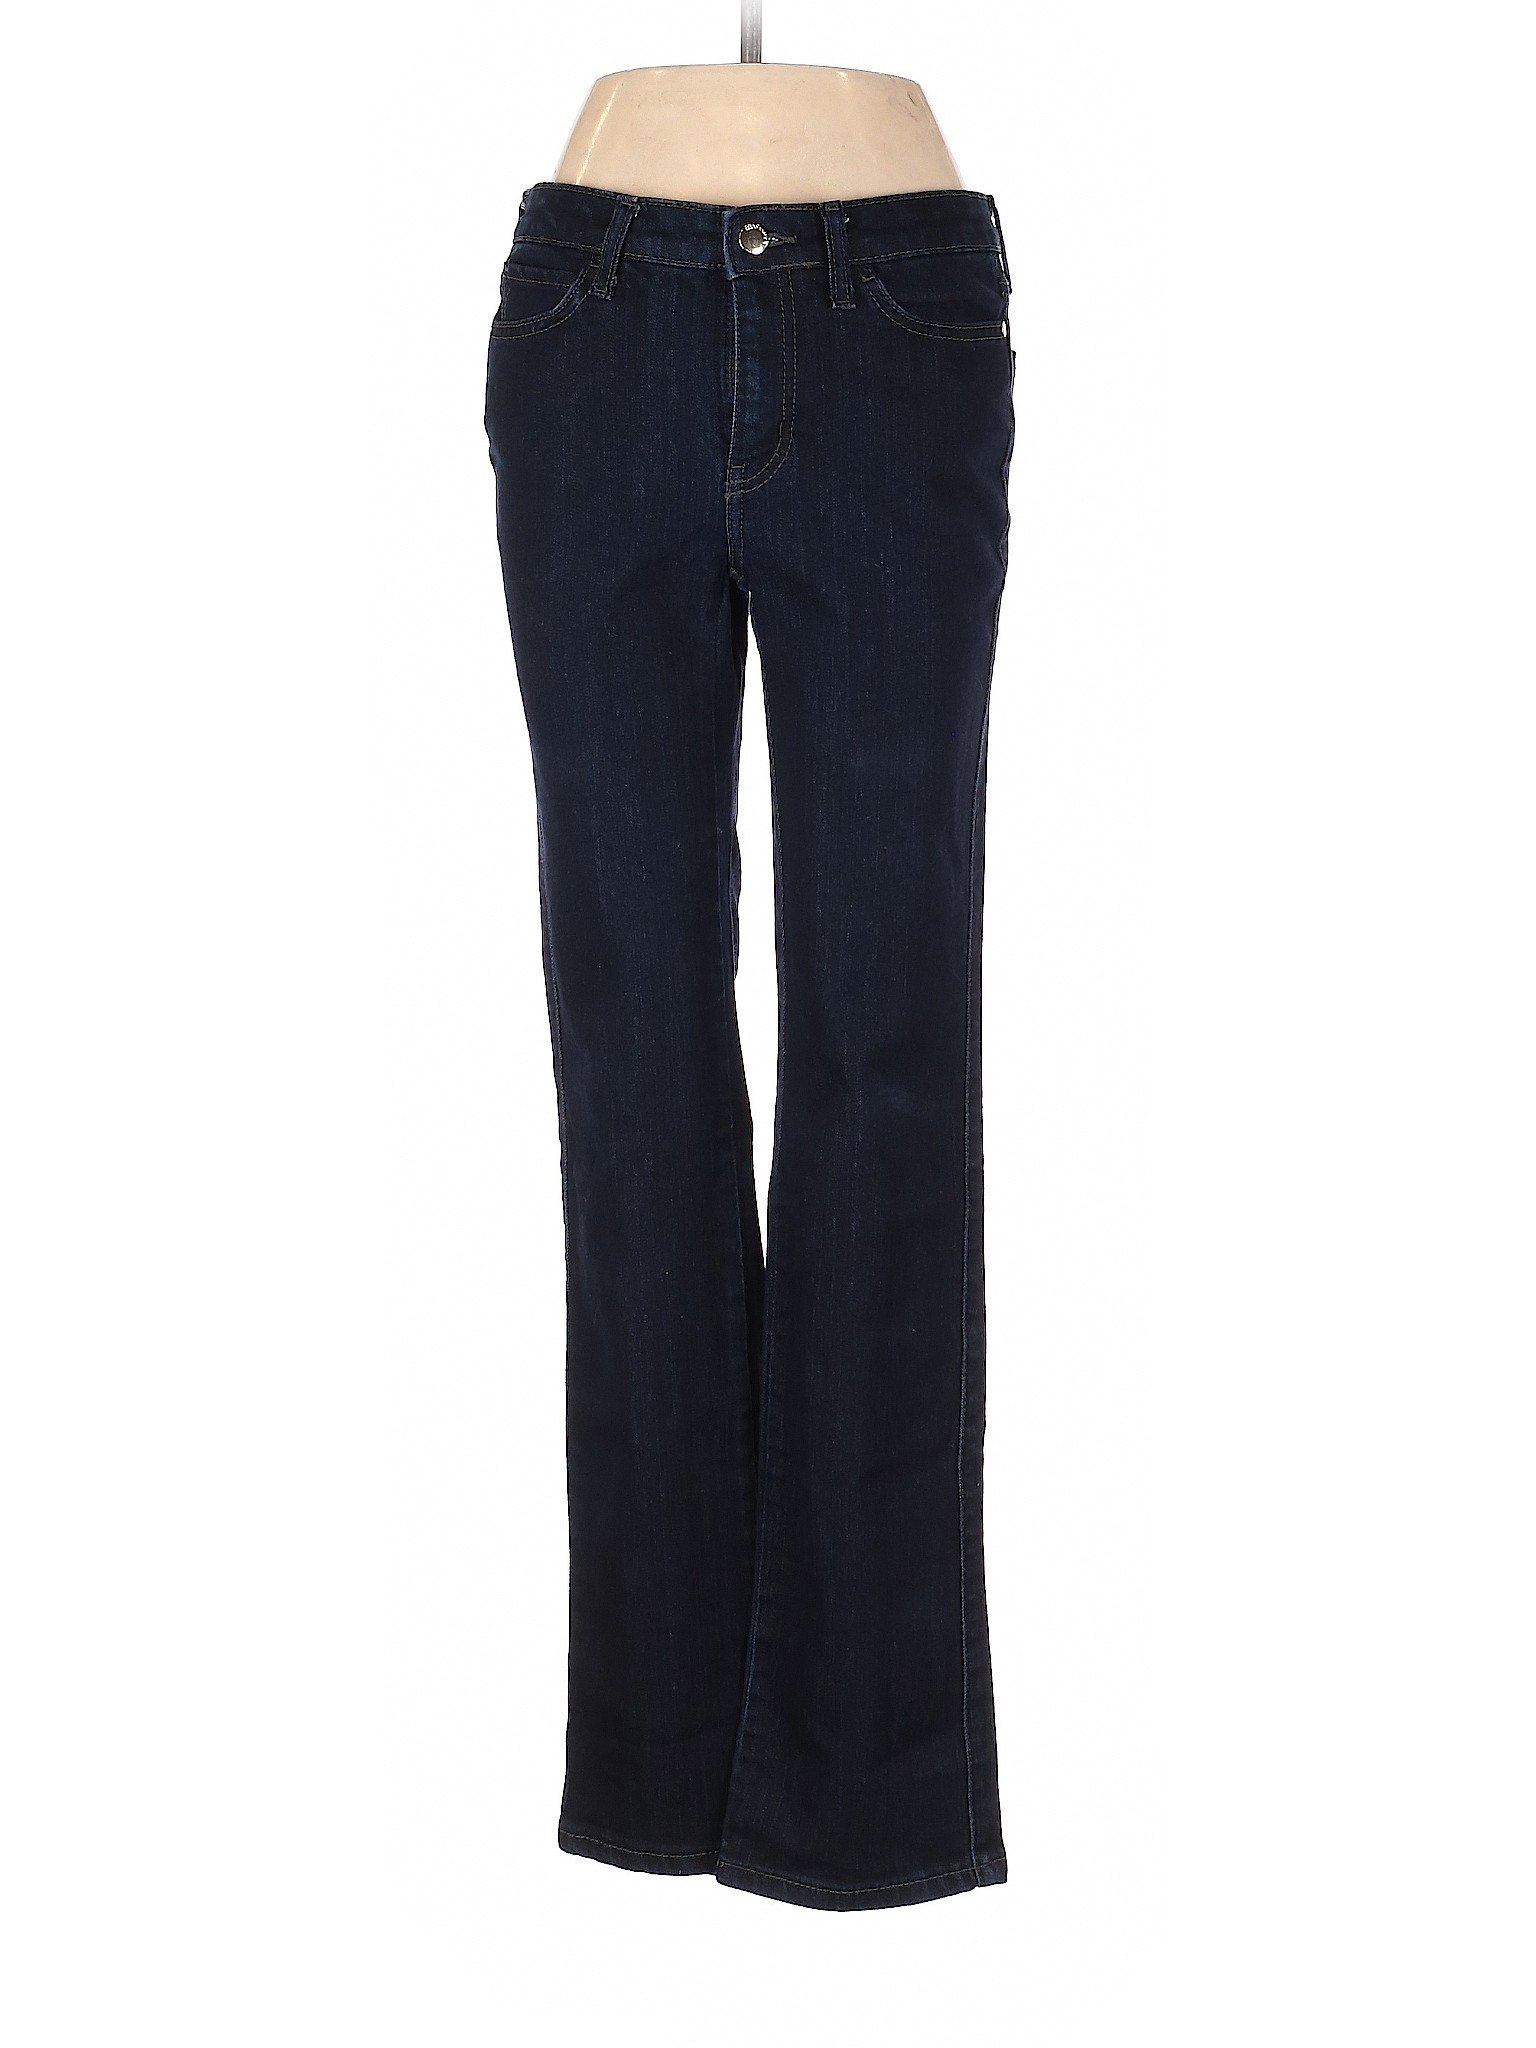 Ellen Tracy Women Blue Jeans 2 | eBay